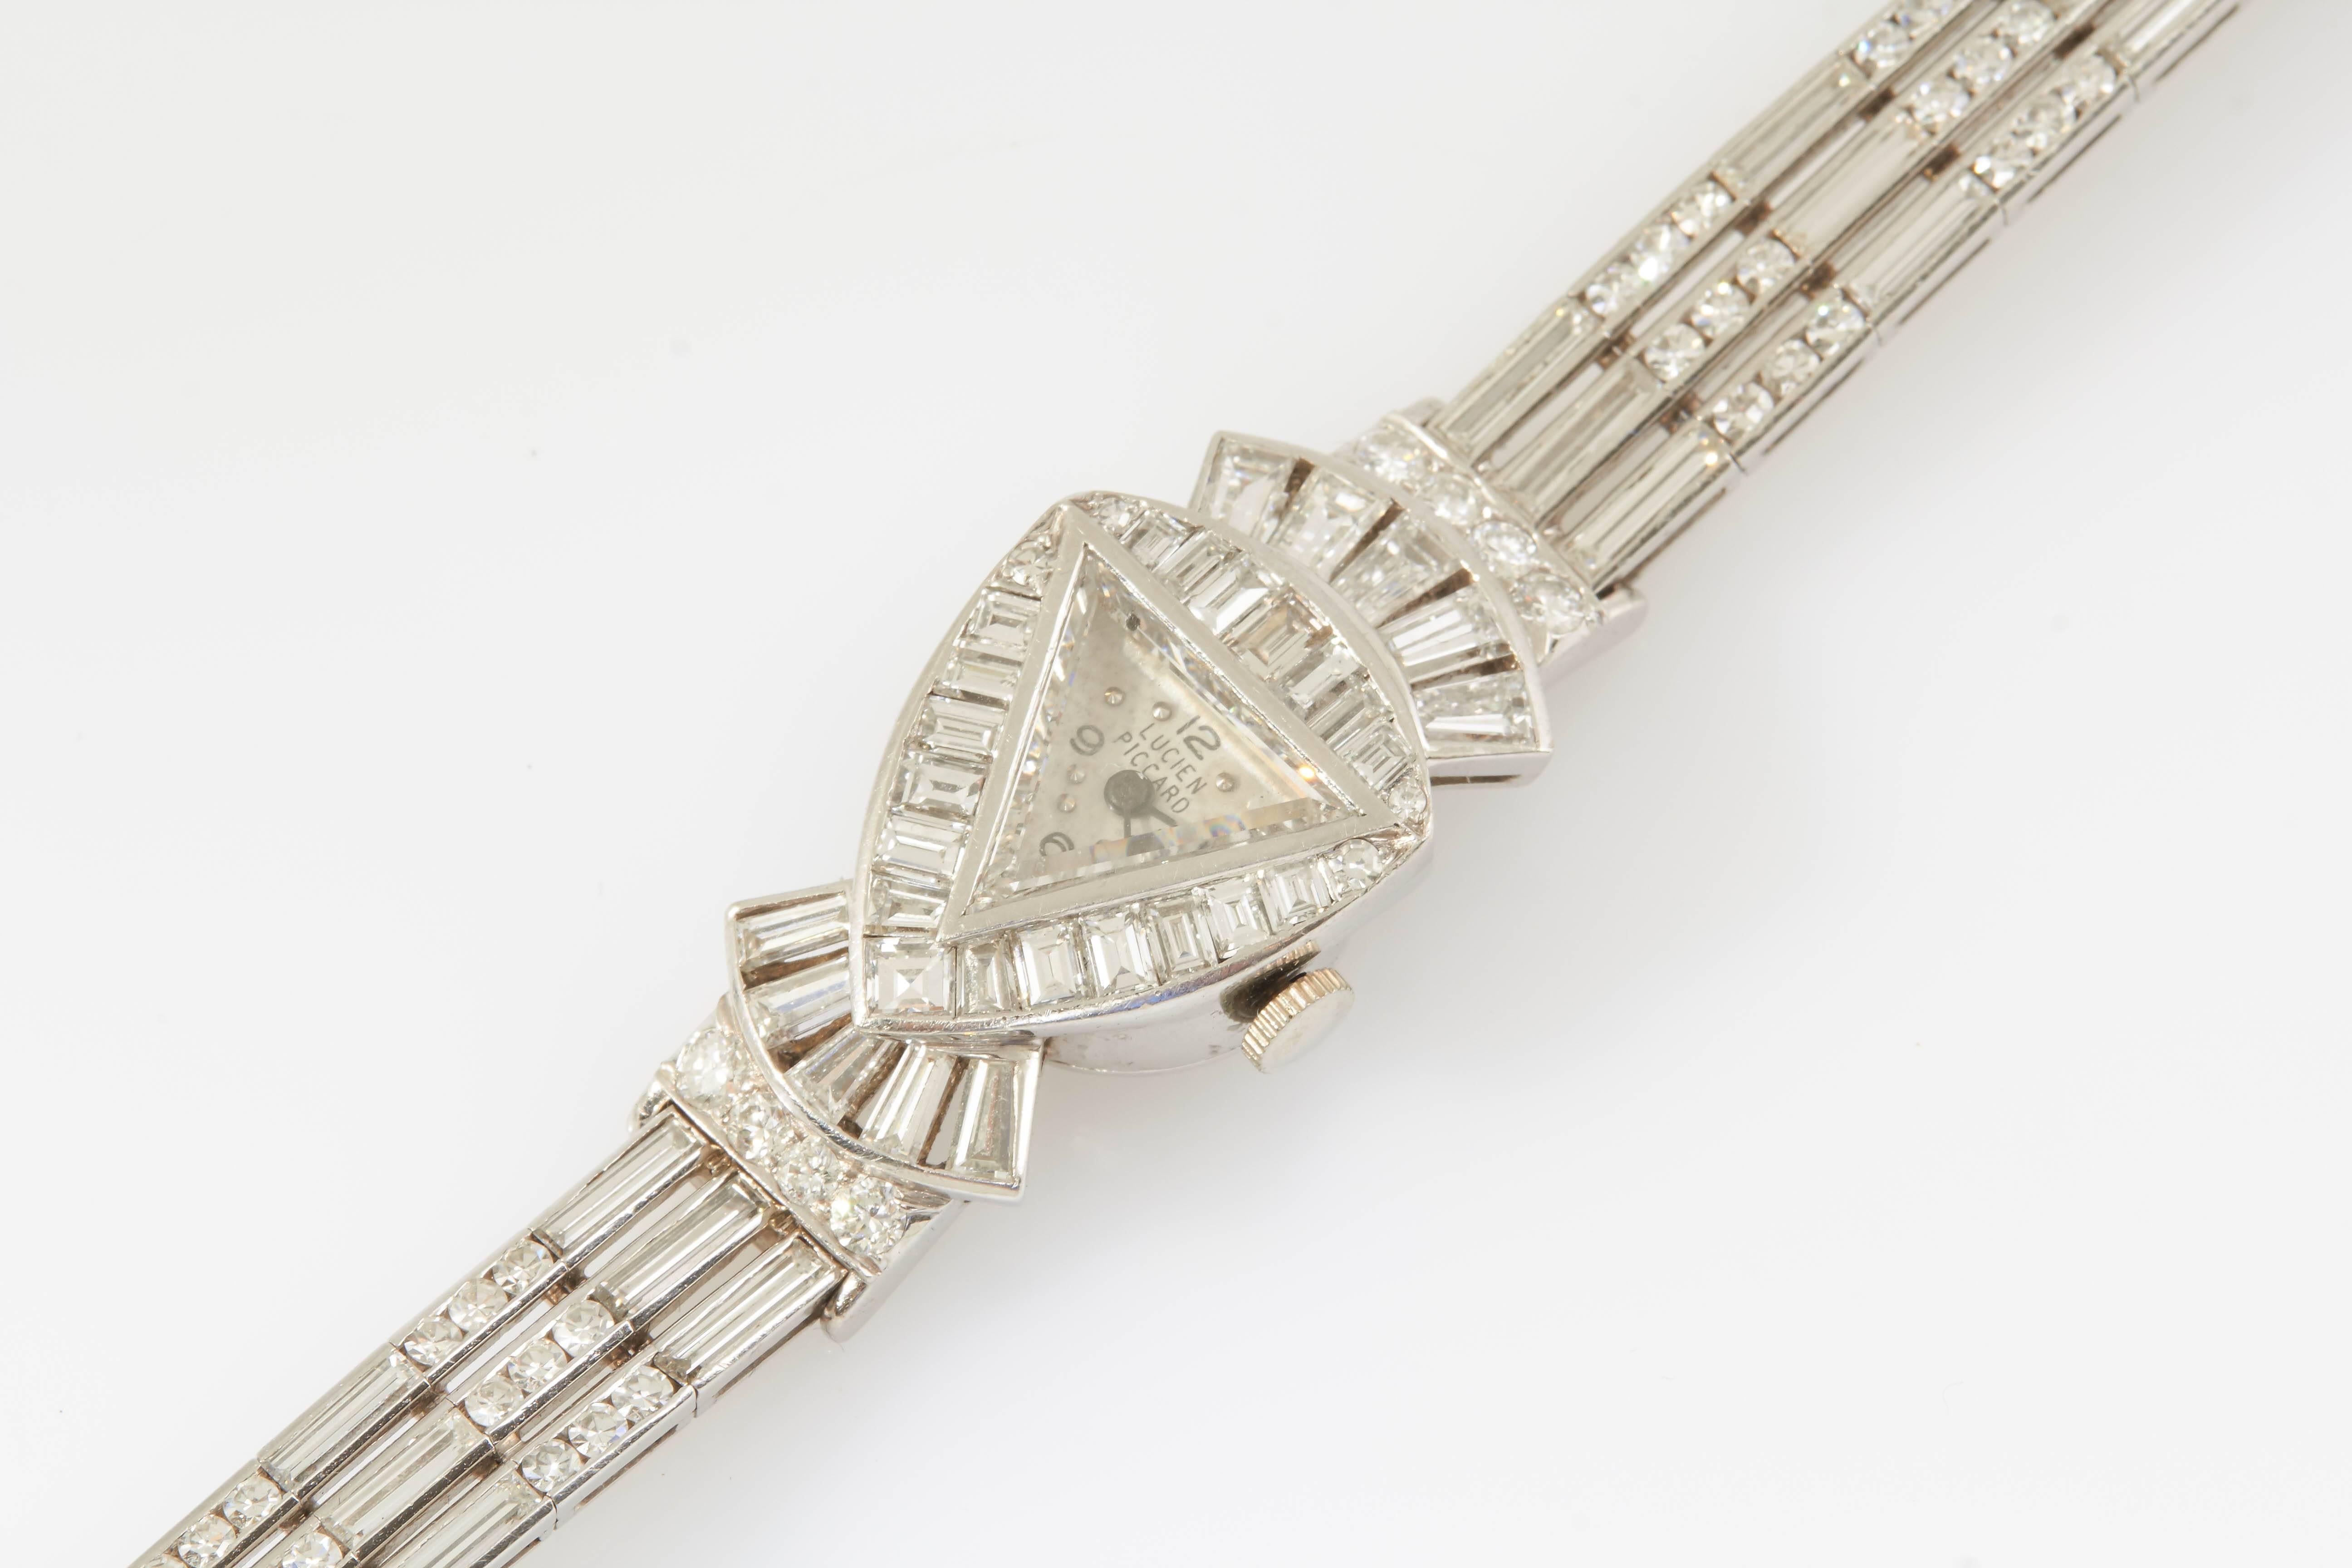 Die signierte Uhr von Lucien Piccard besteht aus Diamanten im Baguette- und Rundschliff mit einem Gesamtgewicht von etwa 20,50 Karat. Das Zifferblatt wird durch ein dreieckiges Diamantglas geschützt. 

